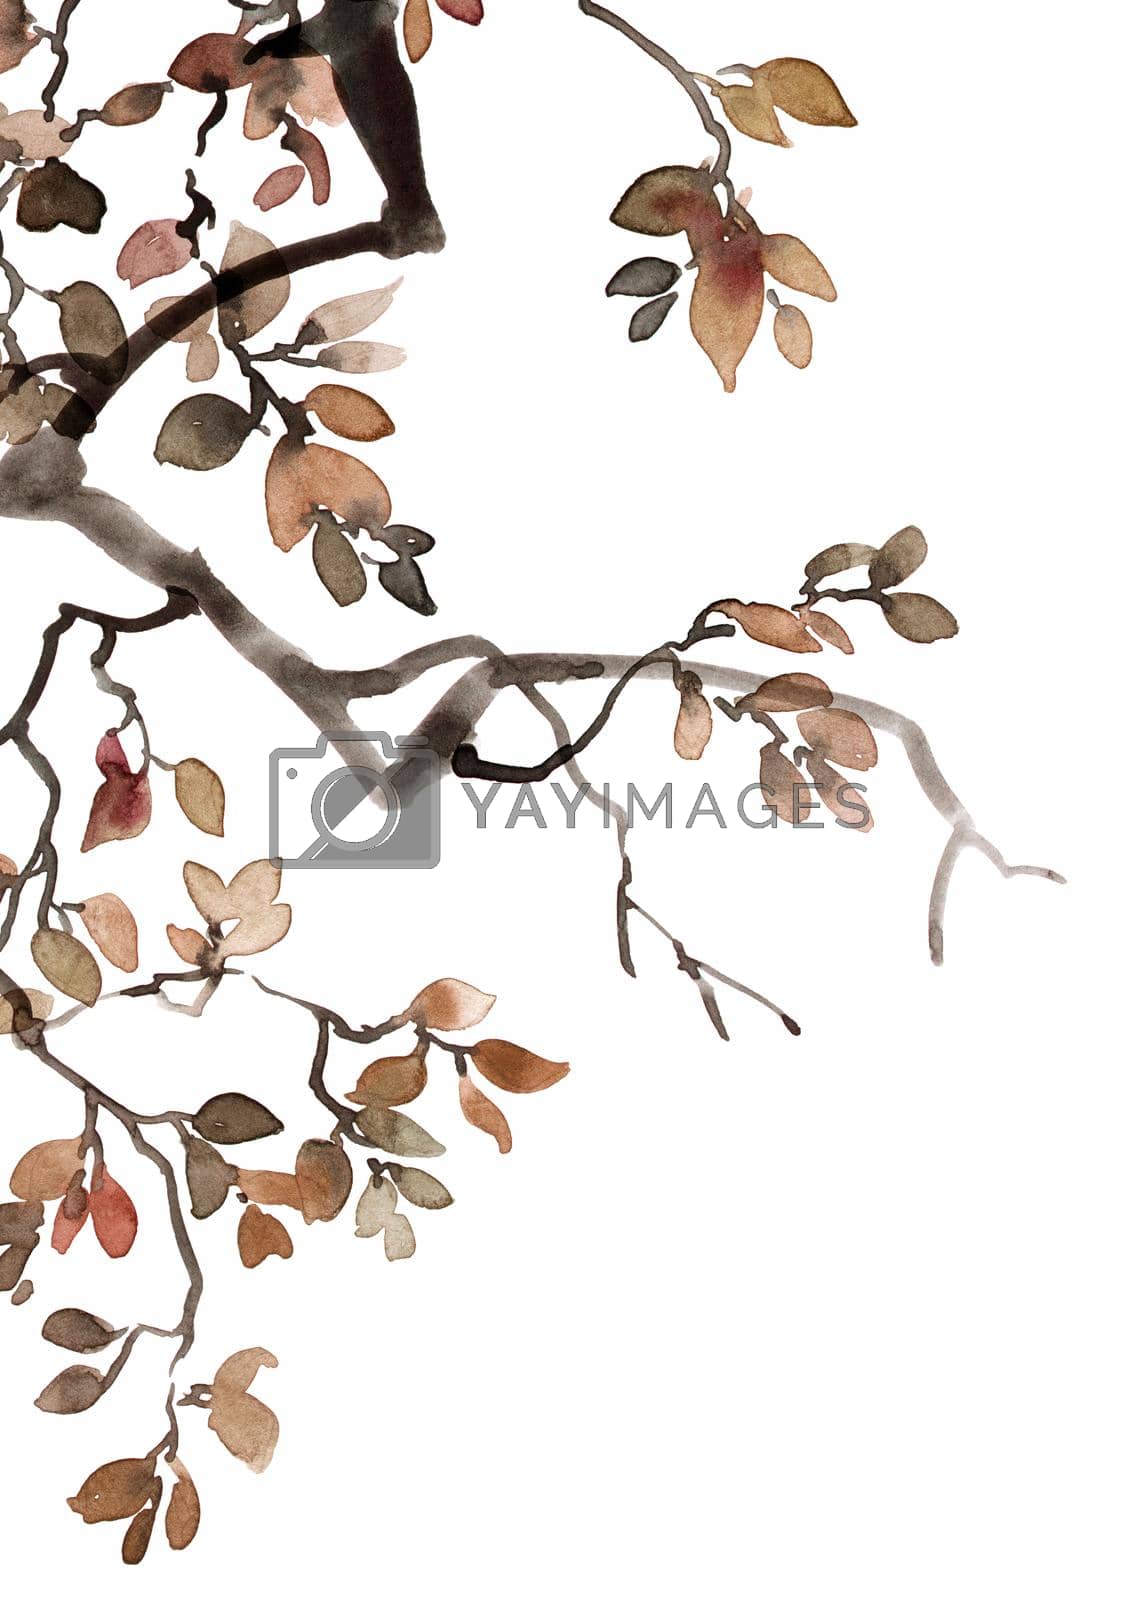 Royalty free image of Watercolor tree foliage by Olatarakanova